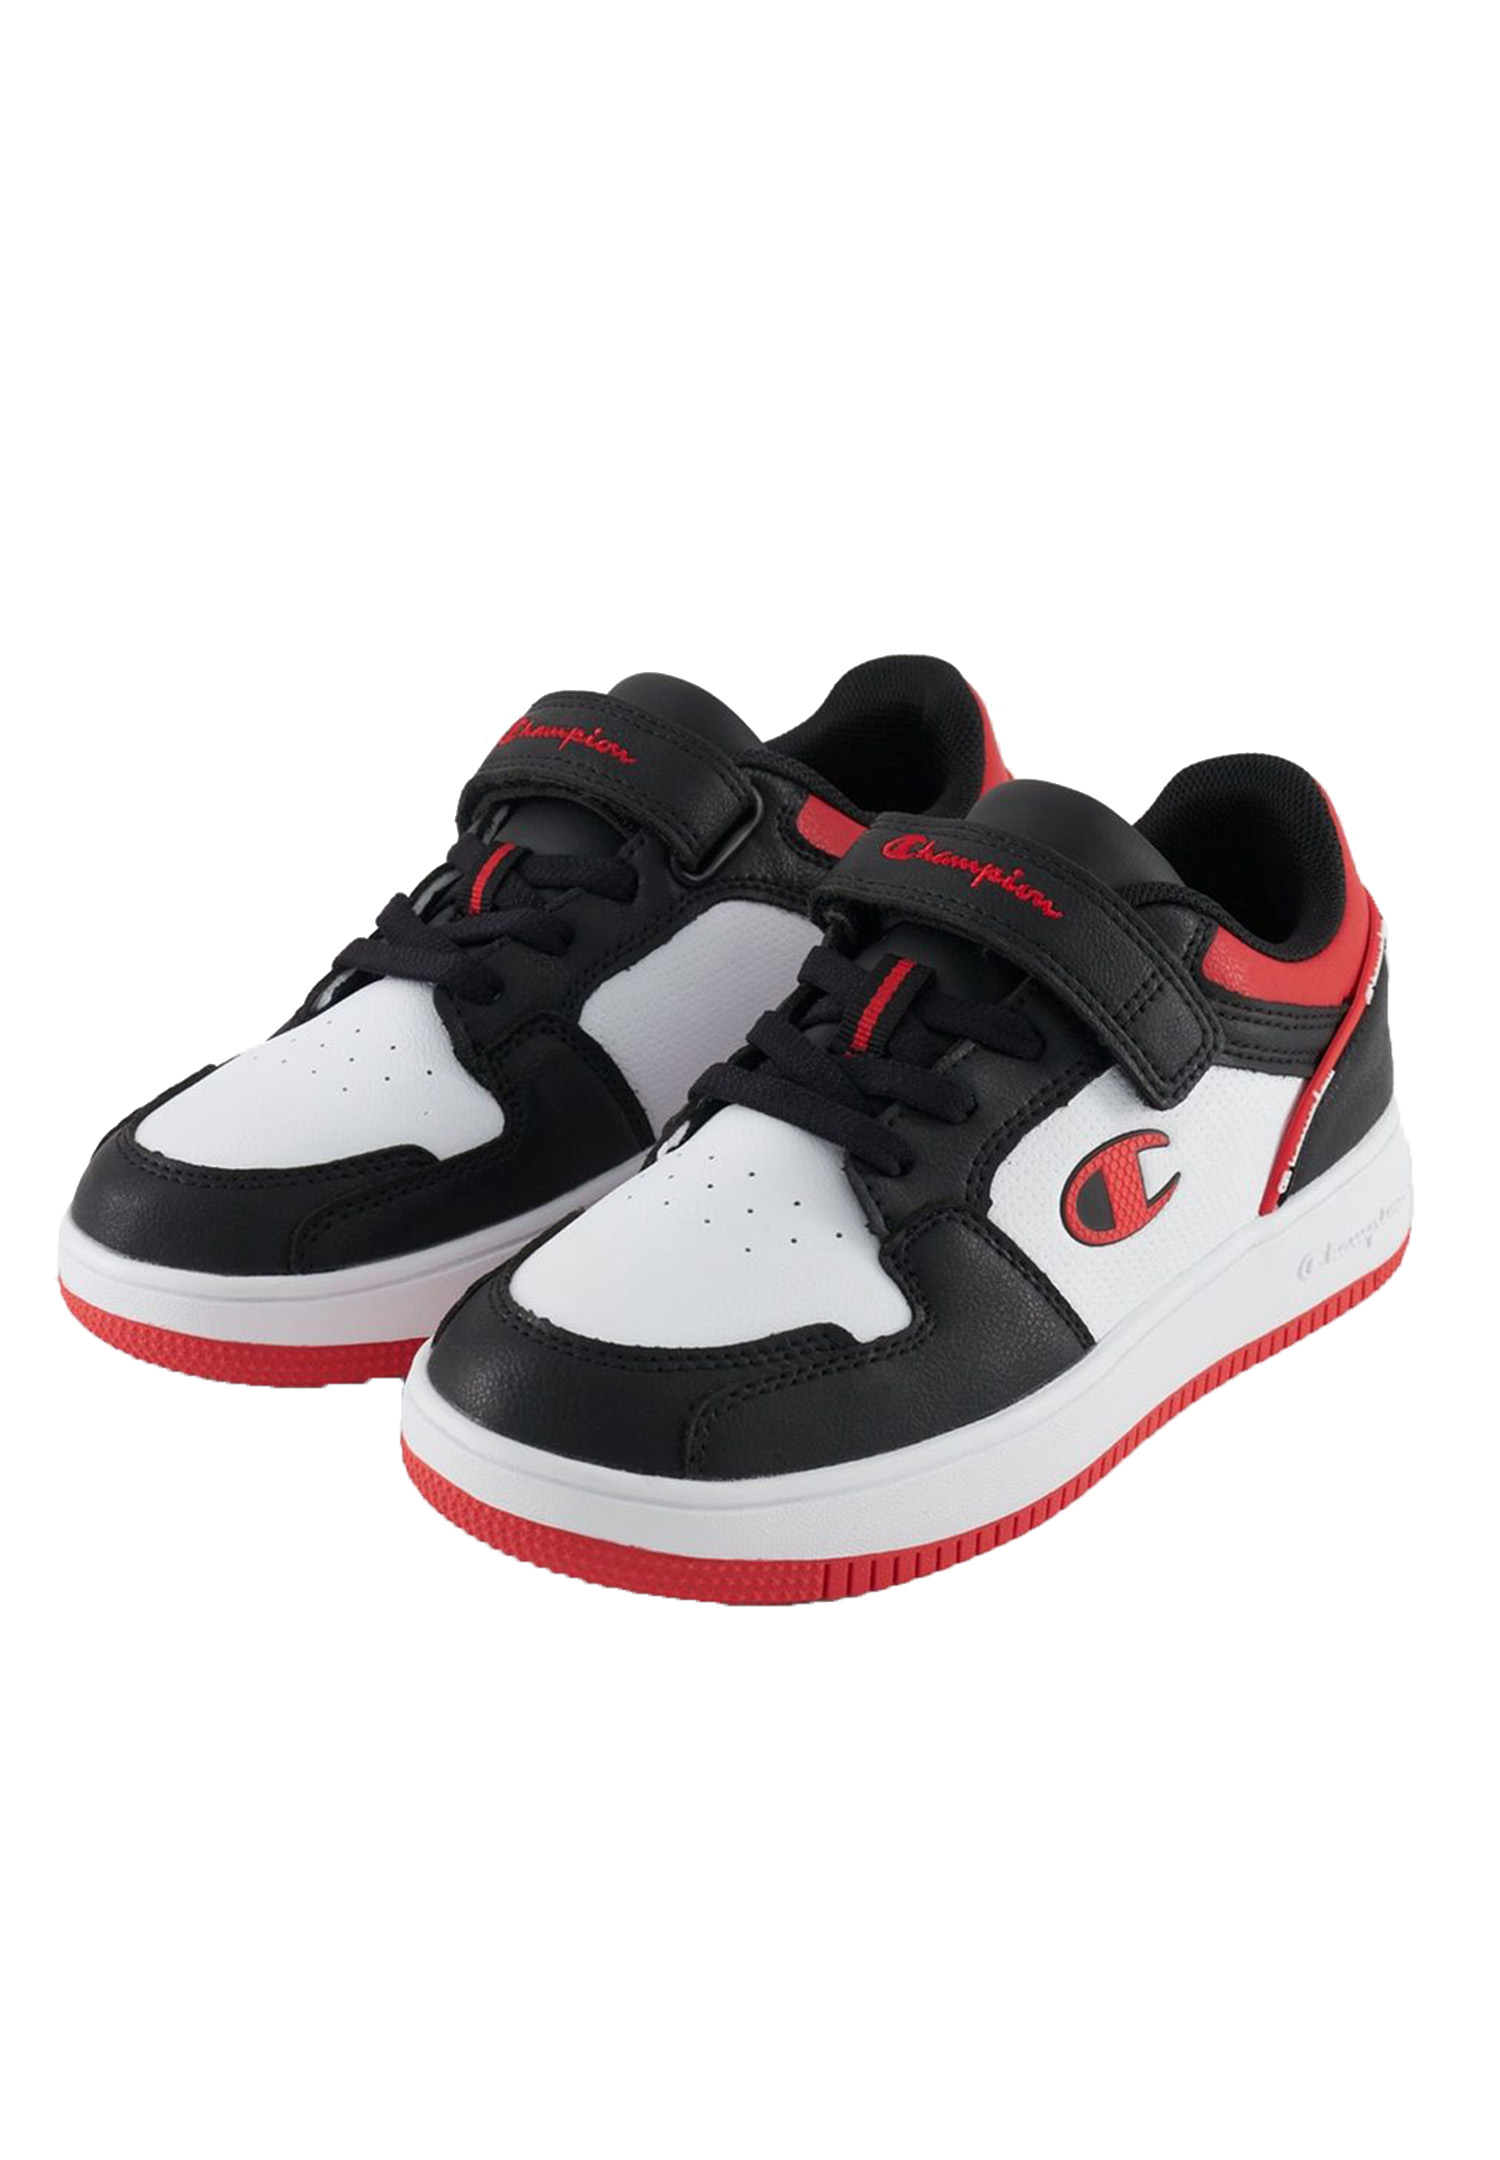 Champion REBOUND 2.0LOW Kinder Sneaker Unisex S32414-CHA-KK003 weiss/schwarz/rot 